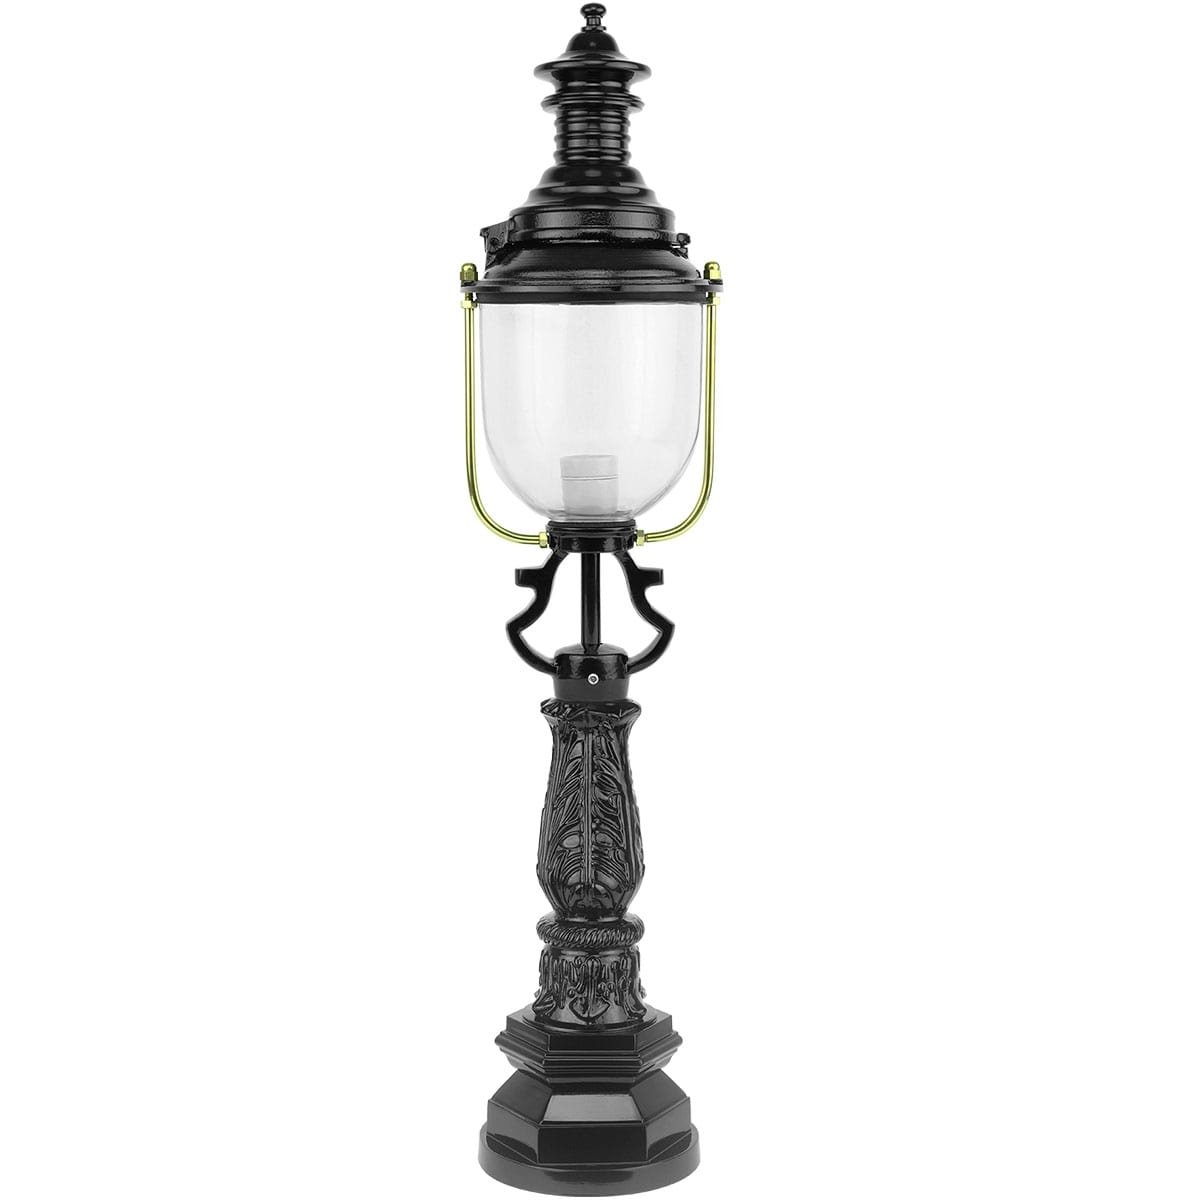 Outdoor Lighting Classic Rural Outdoor lantern standing Lucaswolde - 129 cm